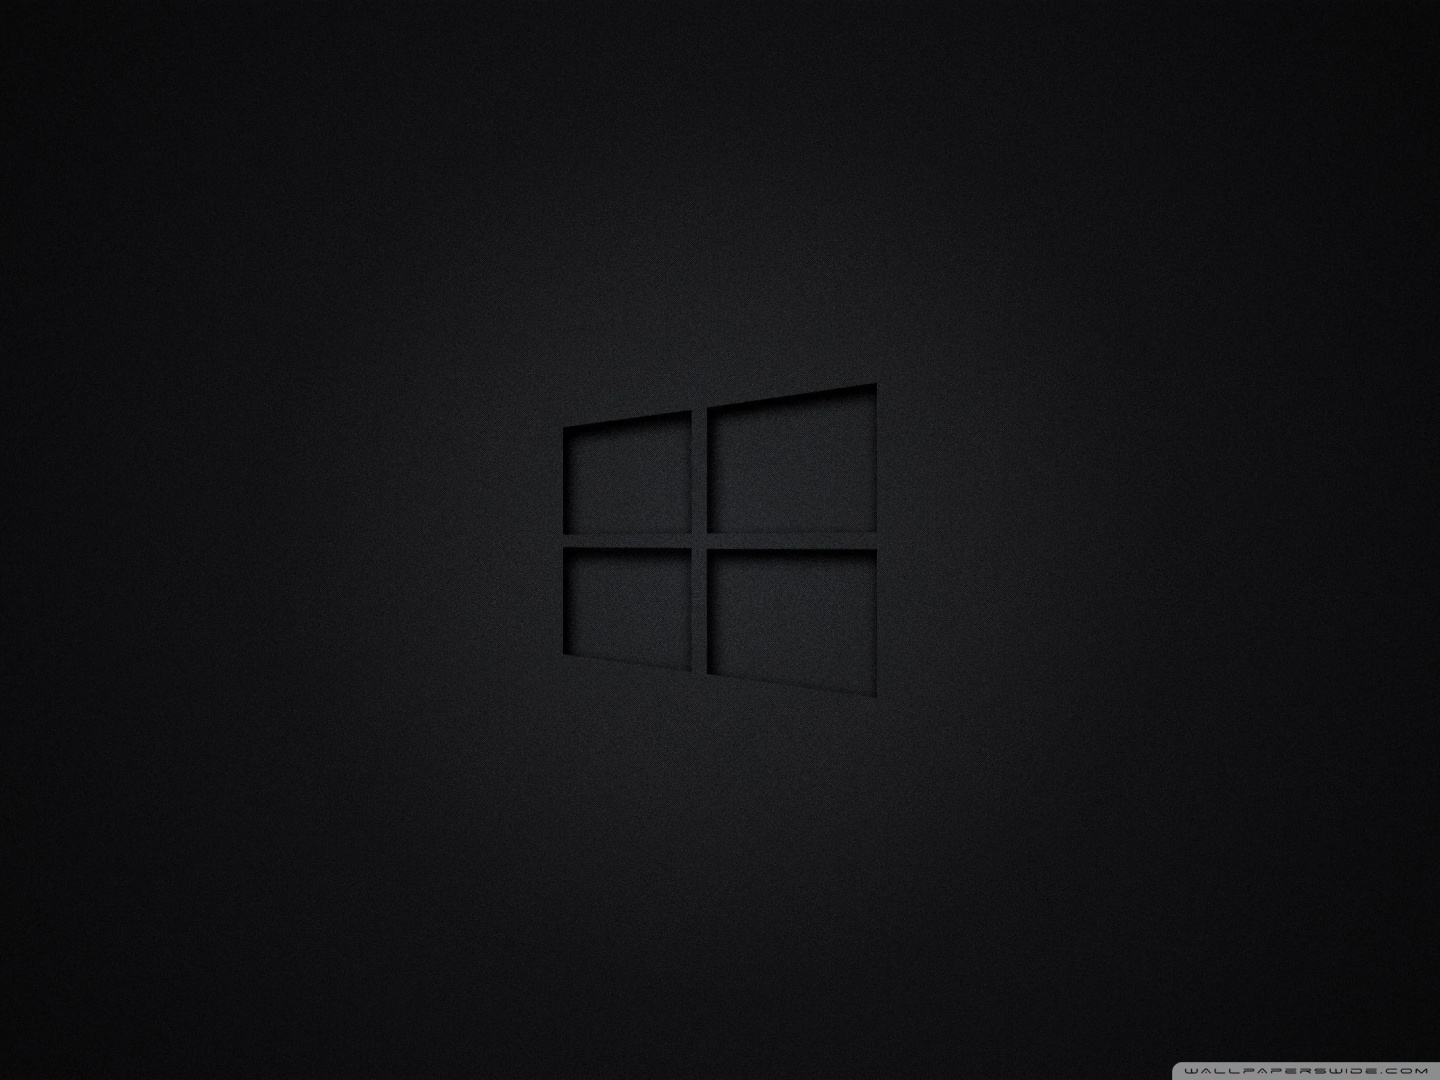 deskscapes windows 10 black background